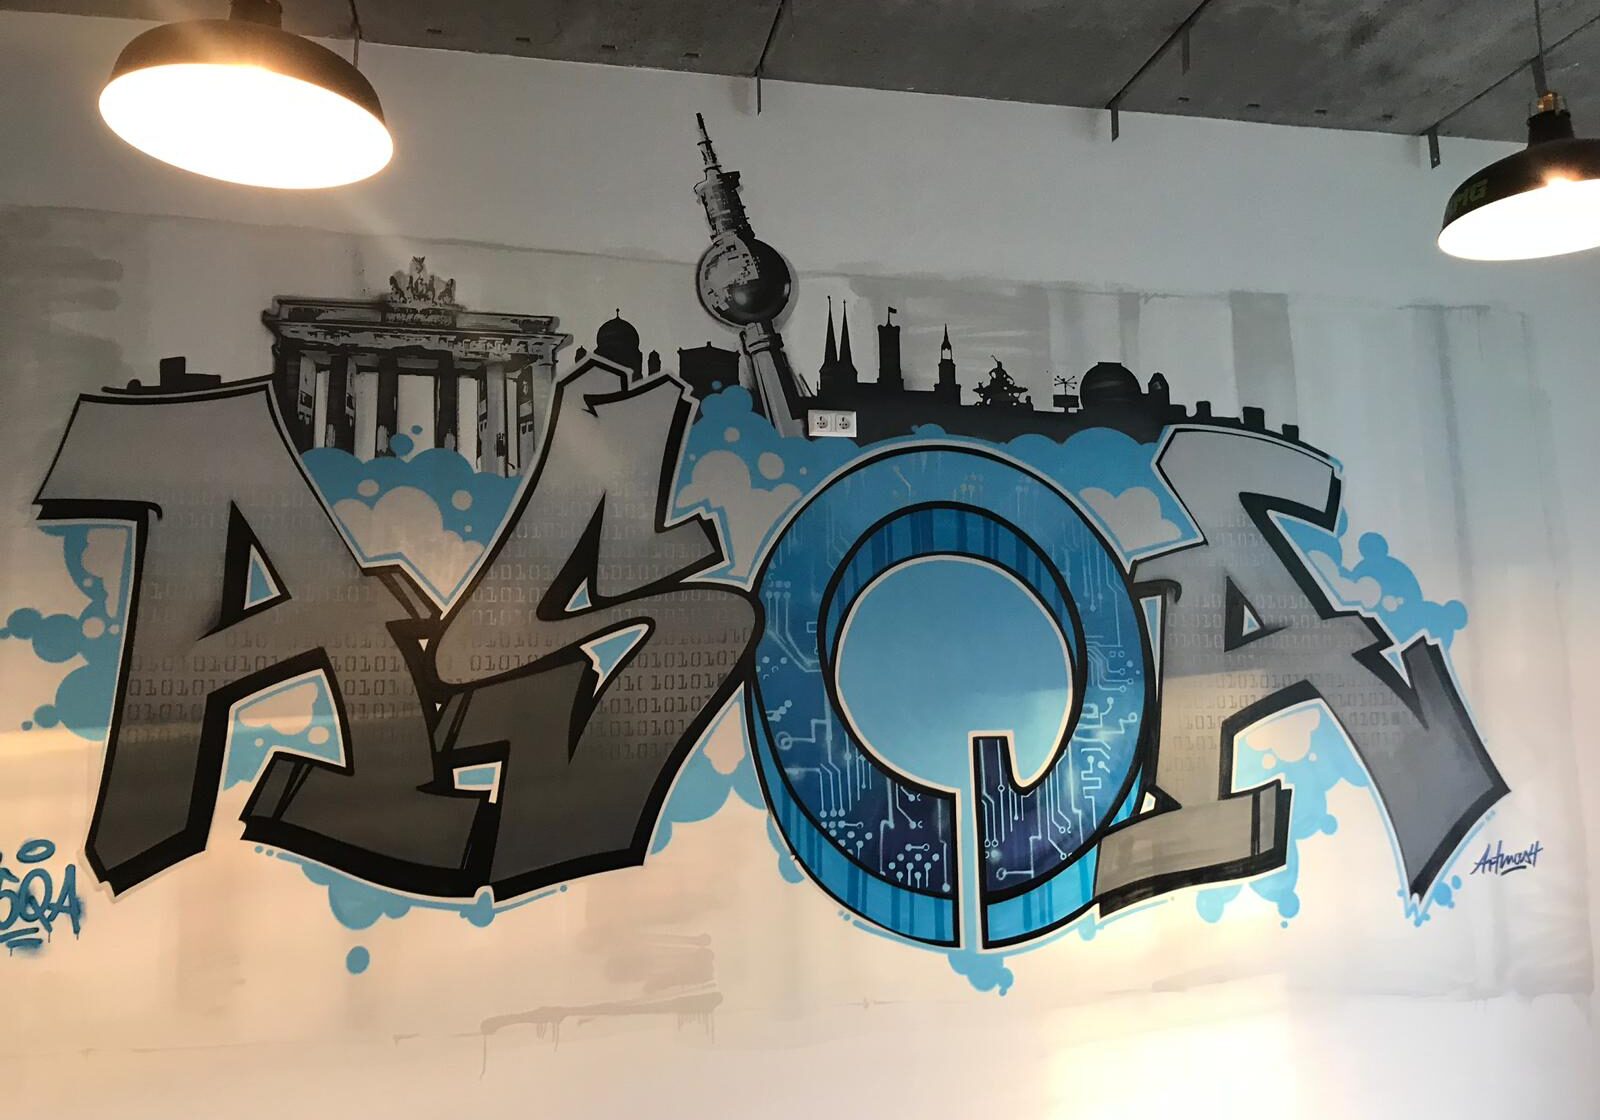 ASQA_Berlin_2018_Graffiti_innen_IT_technik_style_Skyline_sehenswürdigkeiten_grau_blau